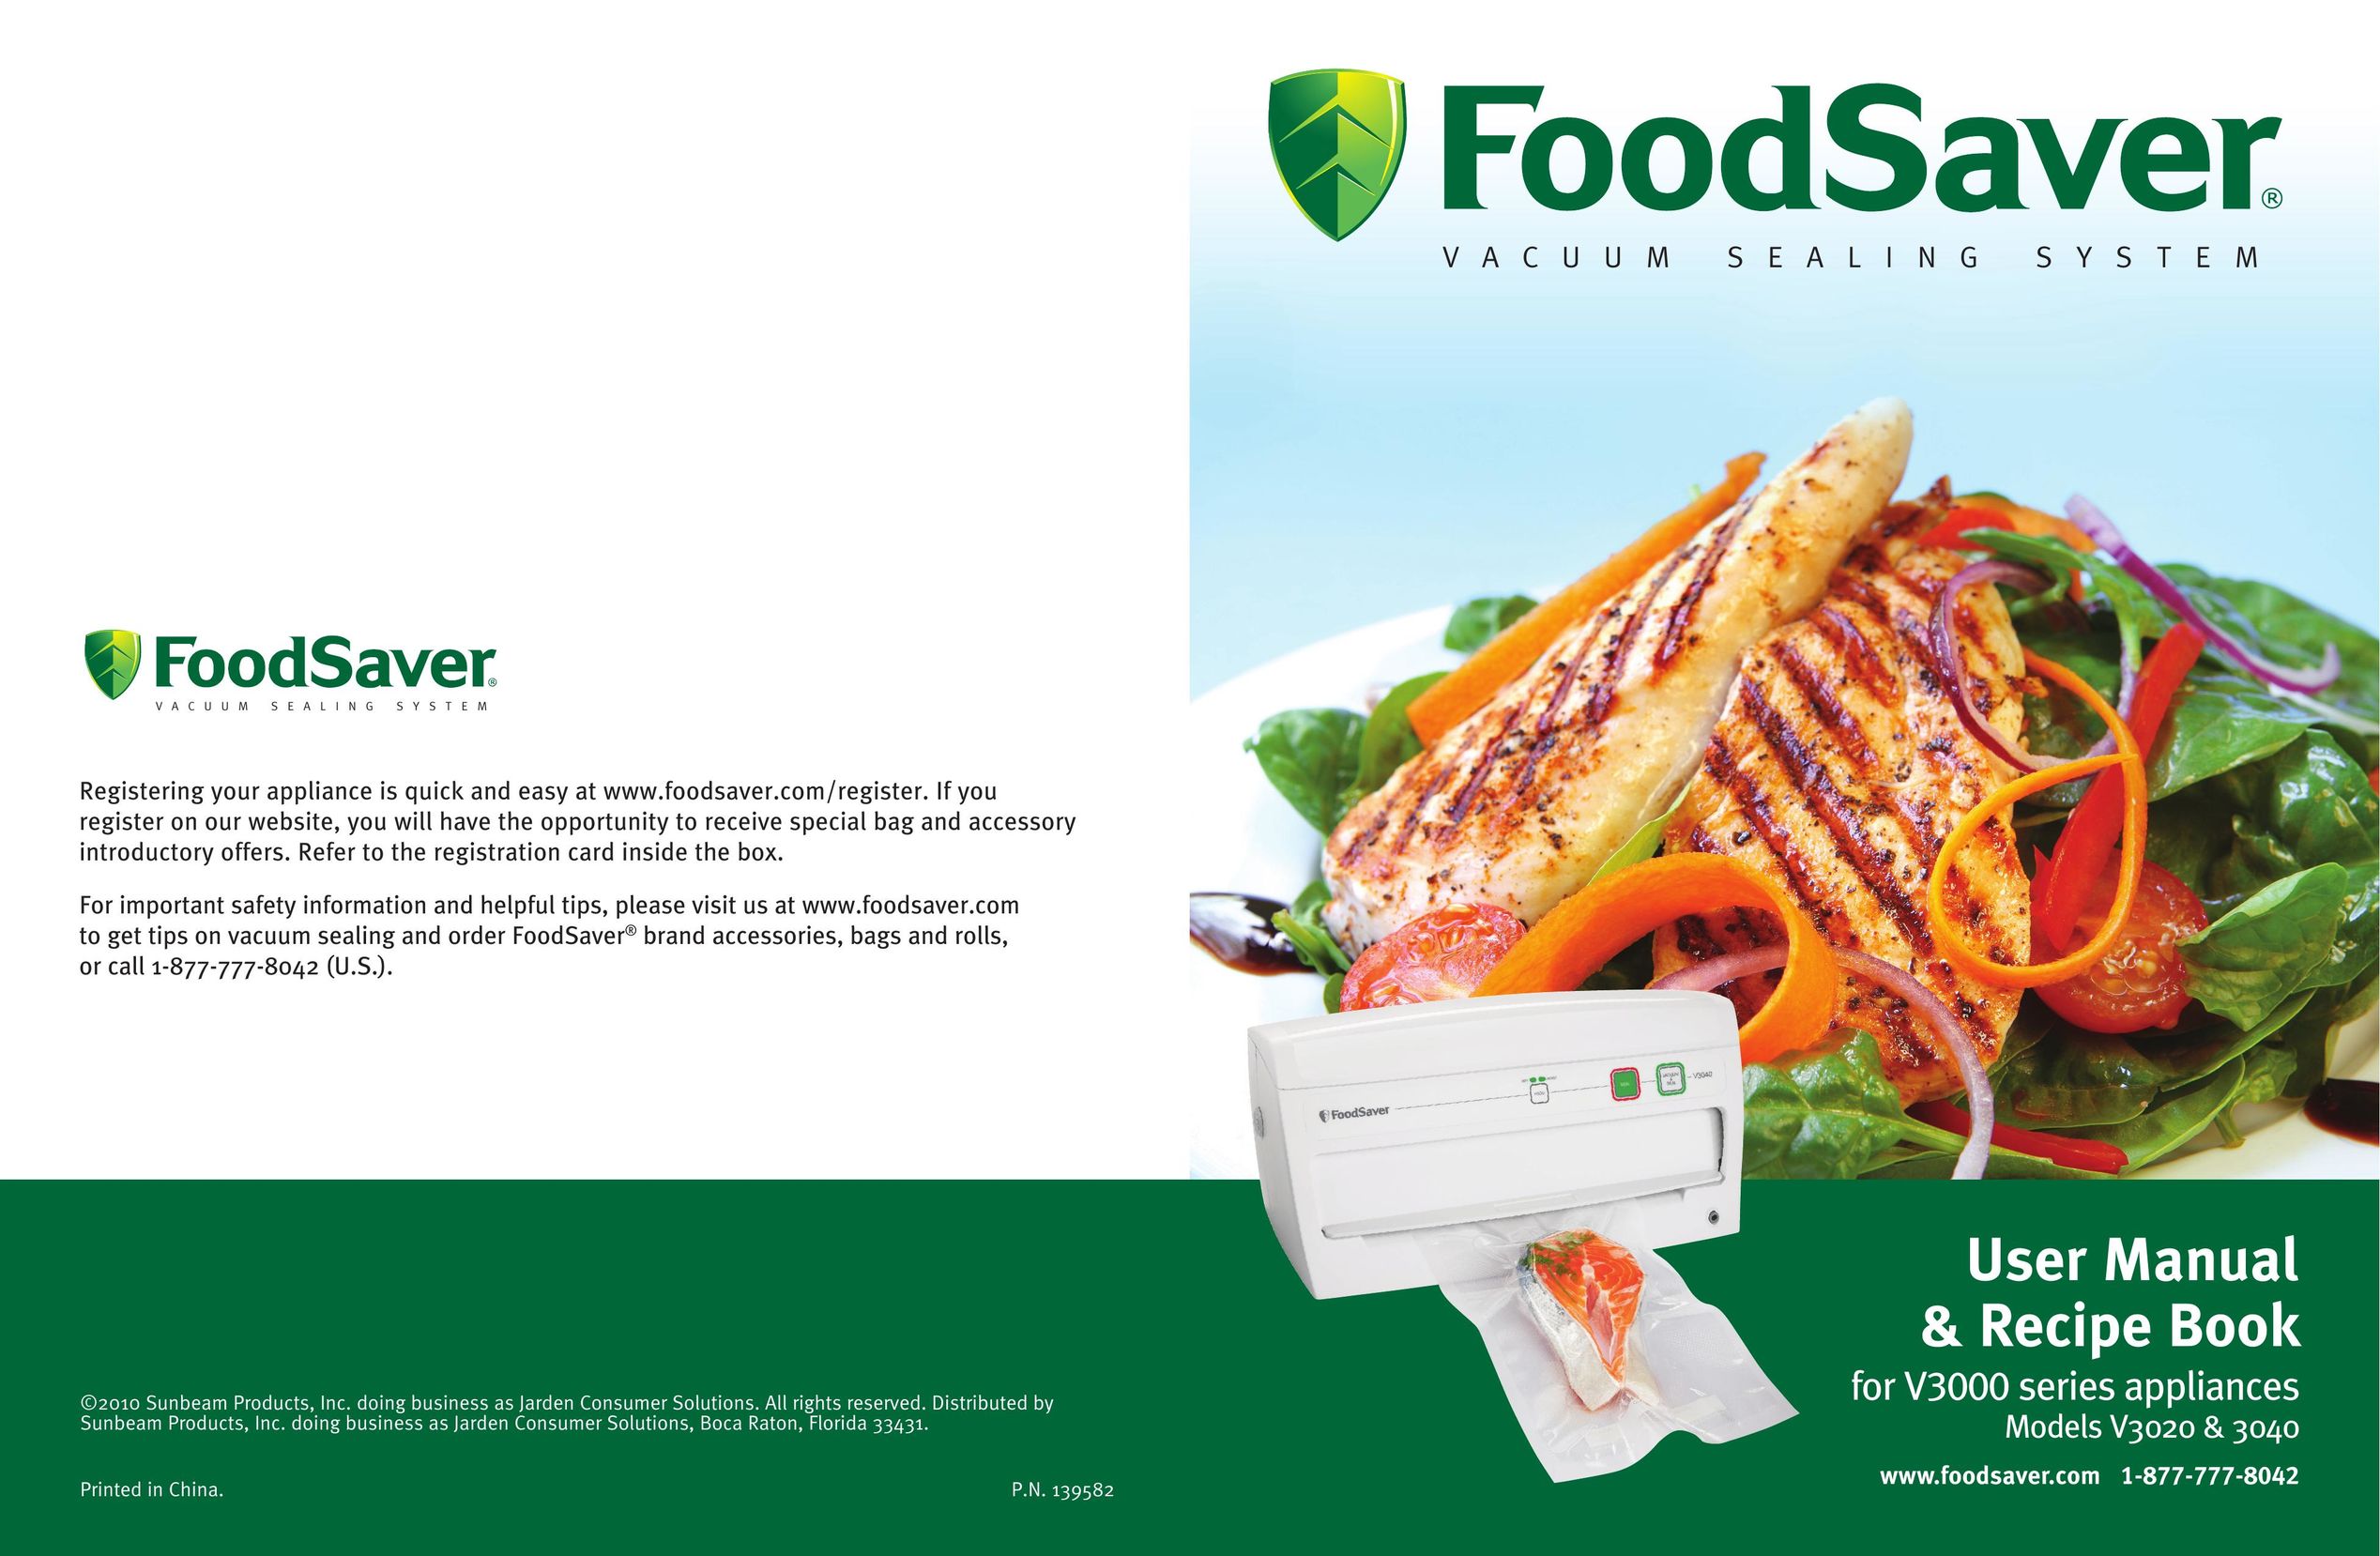 FoodSaver foodsaver vacuum sealing system Food Saver User Manual